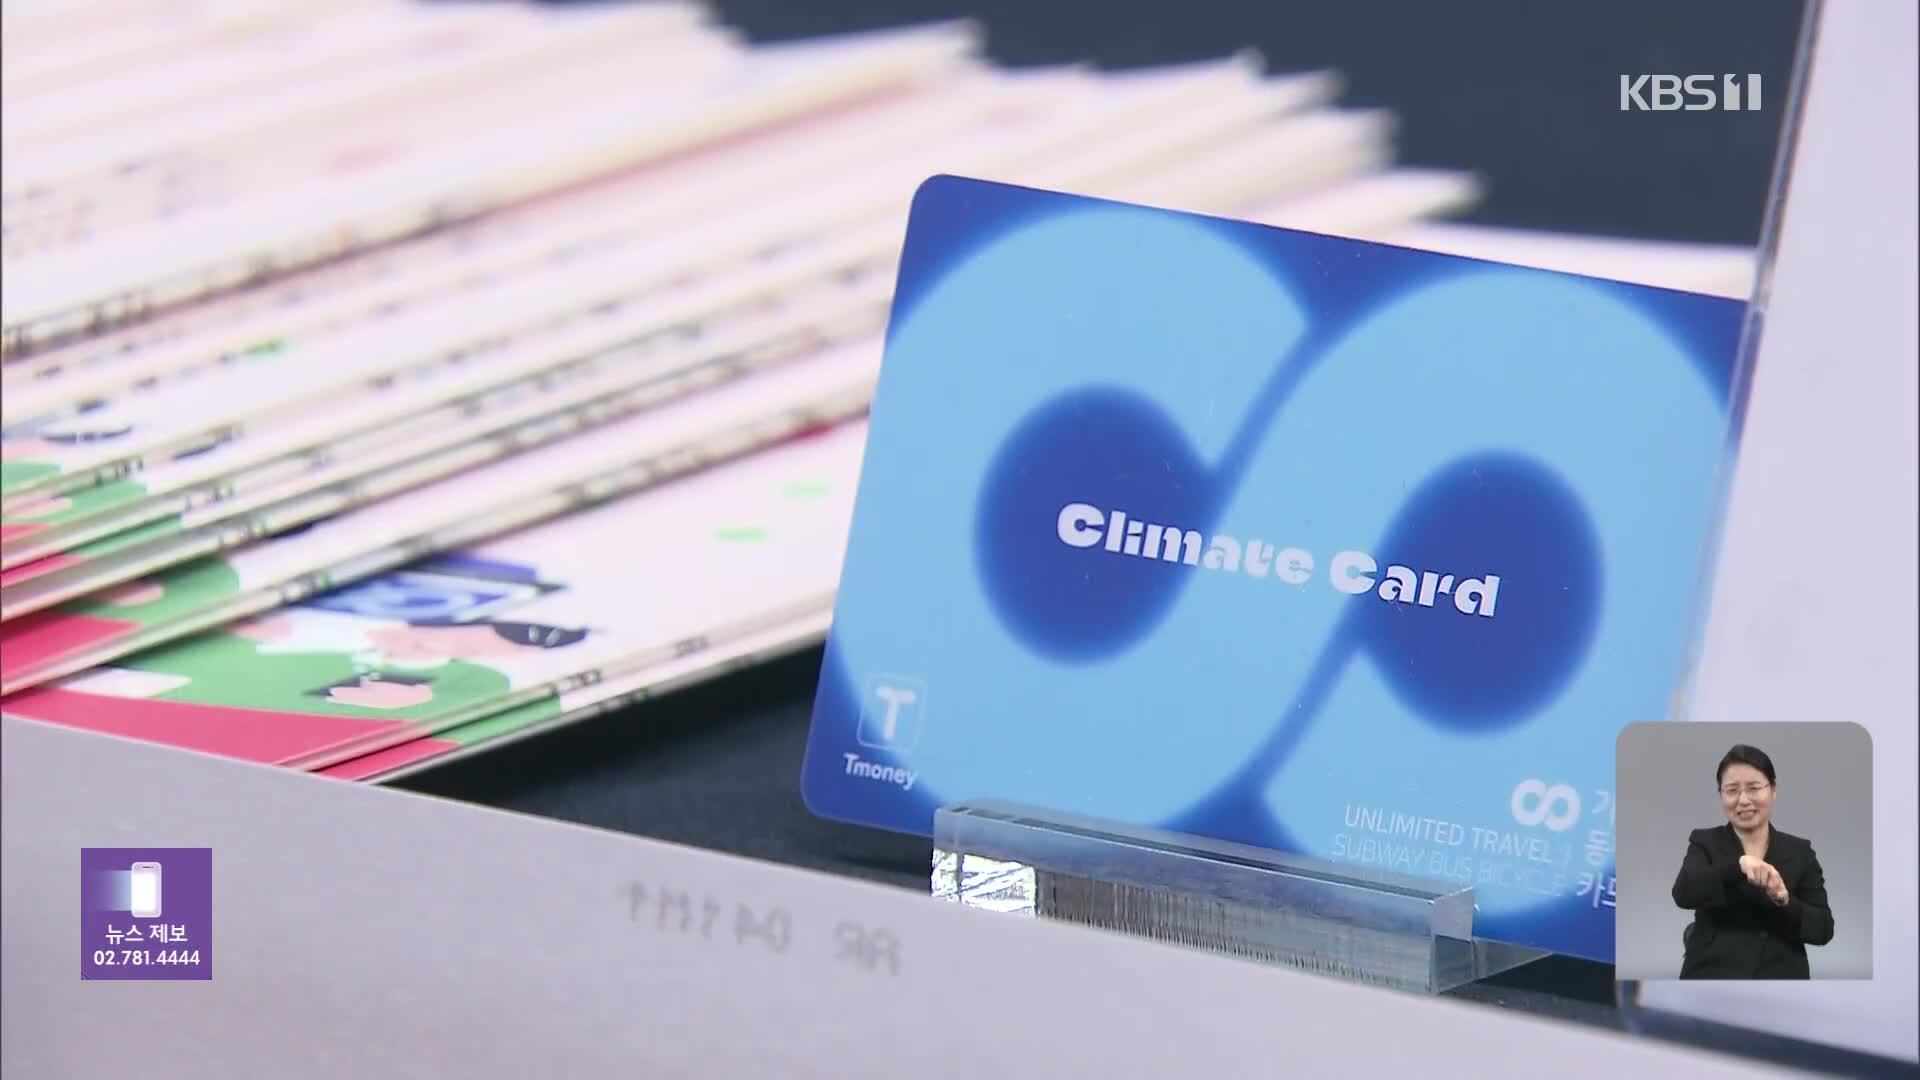 ‘기후동행카드’ 판매 첫 날부터 인기…누가 쓰면 이득?